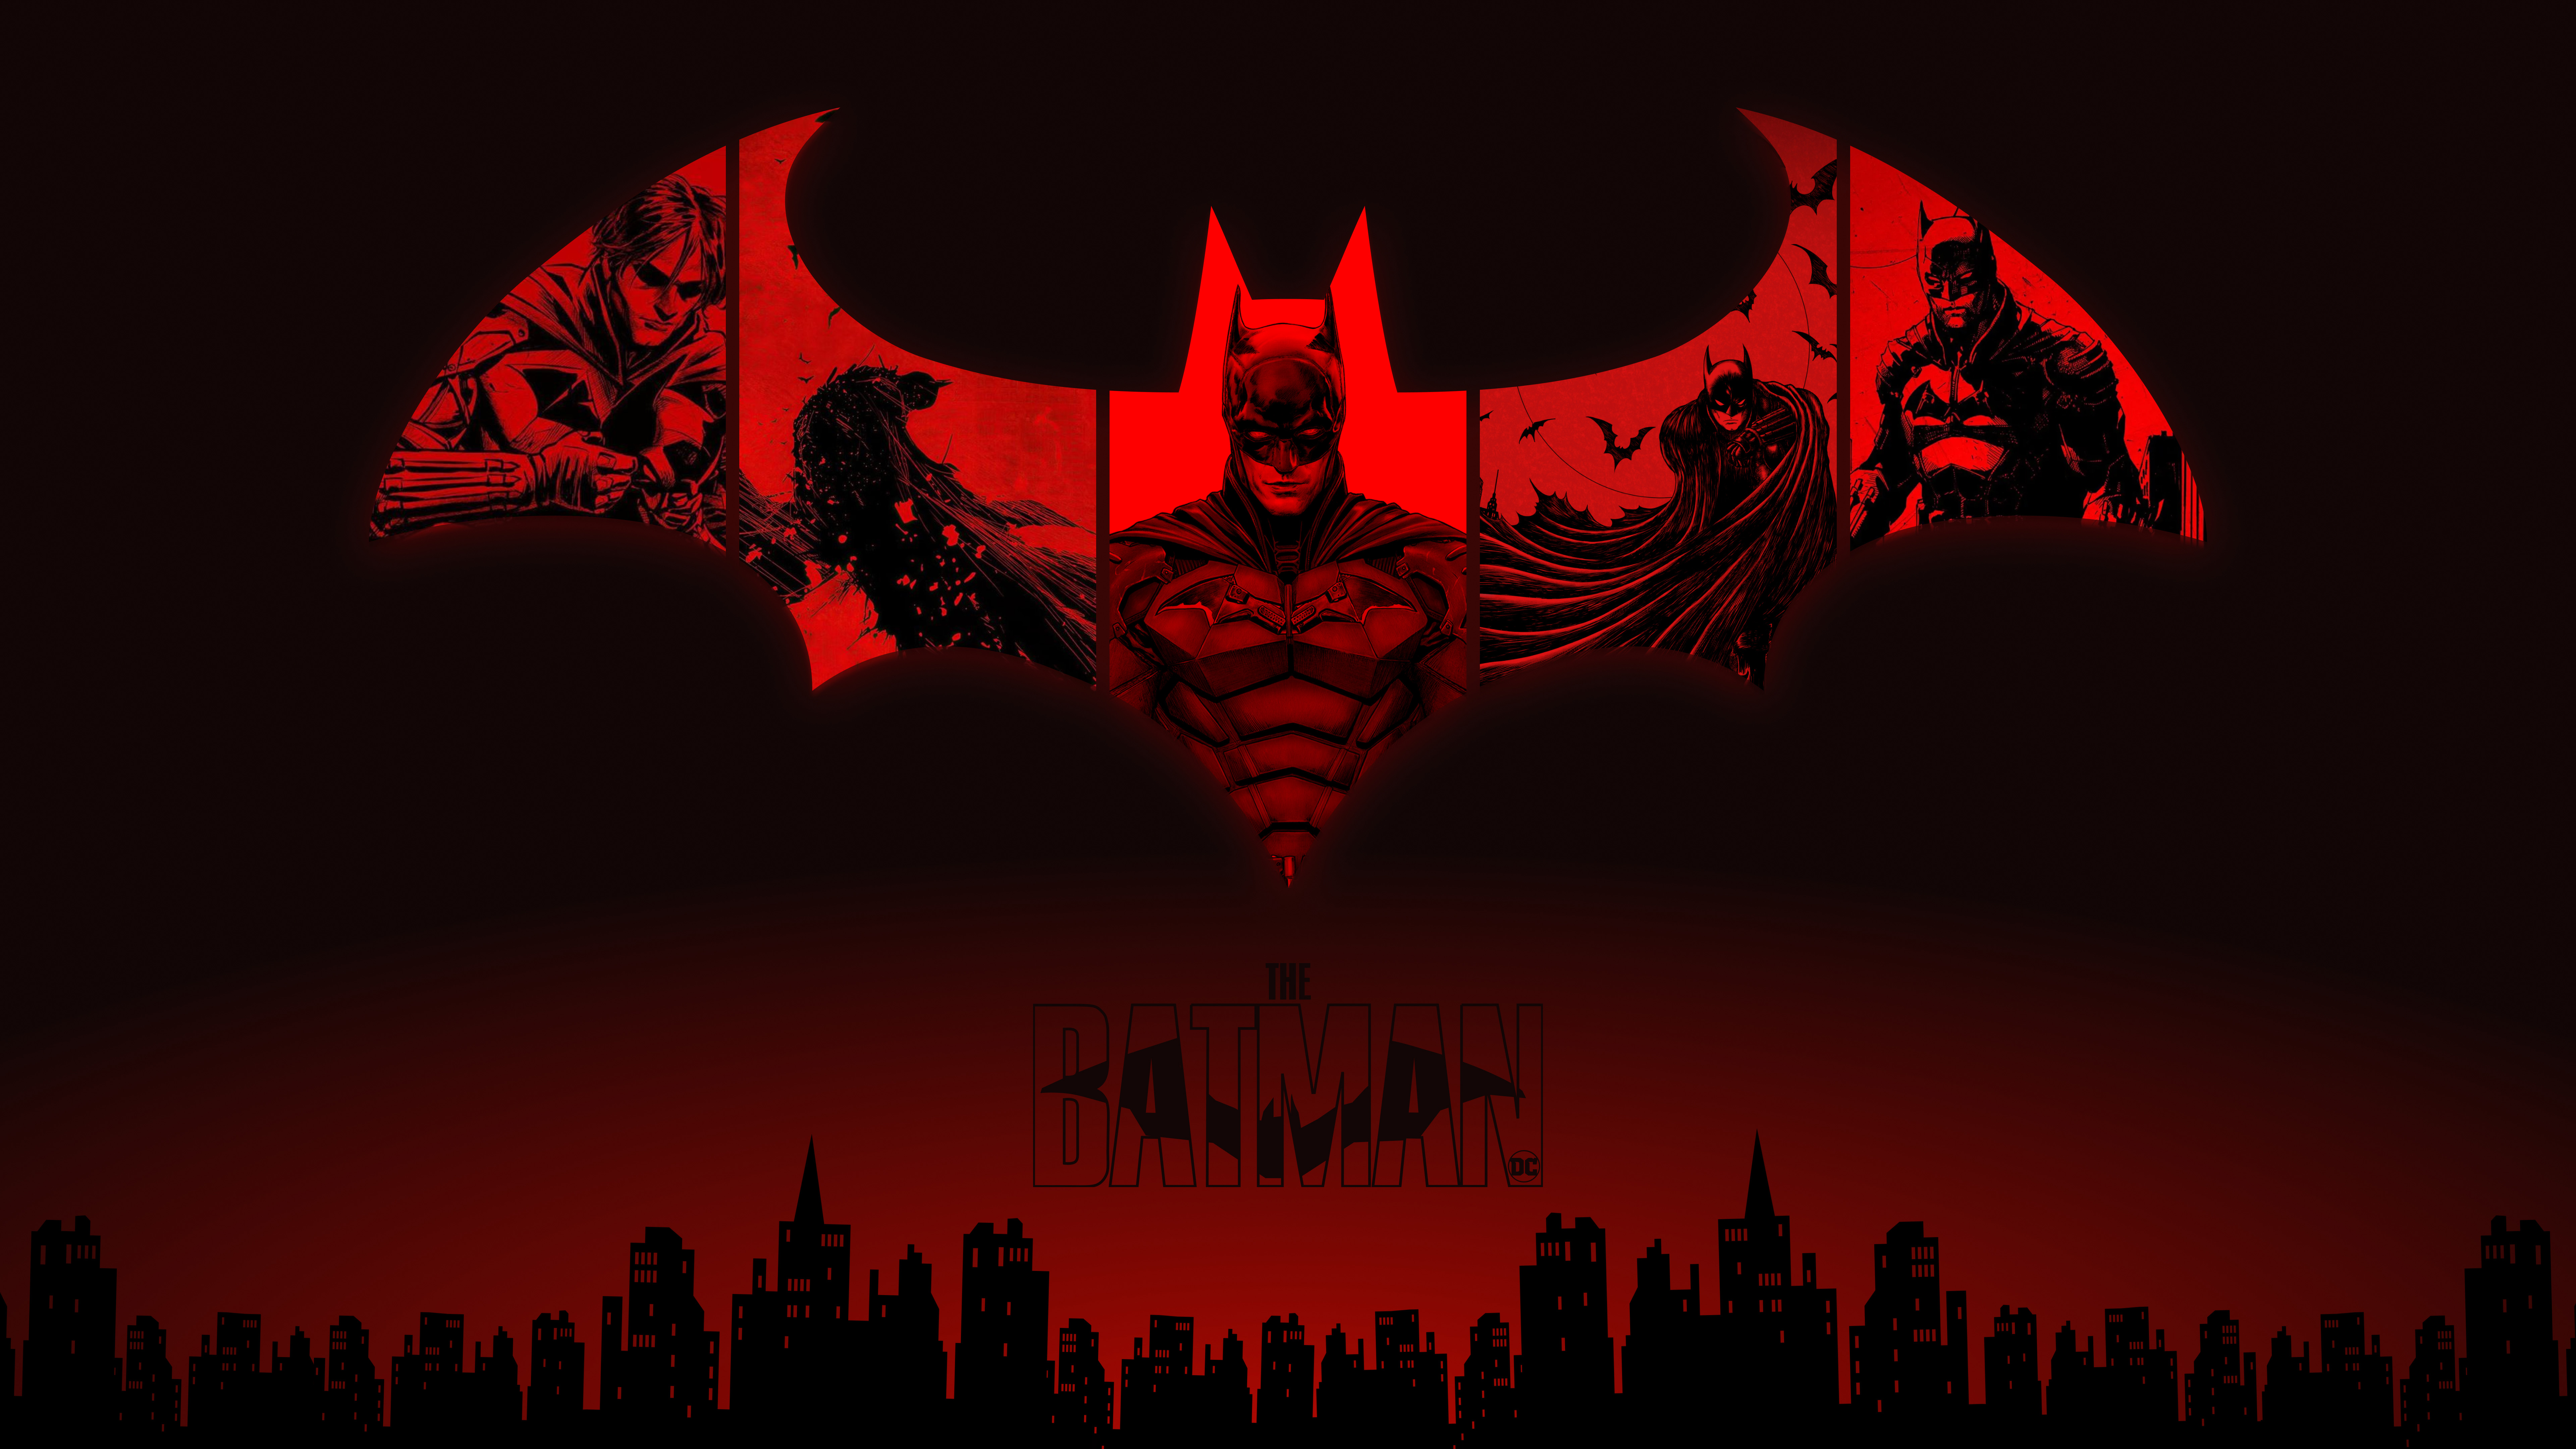 The Batman wallpaper [3459x7496] : r/Amoledbackgrounds